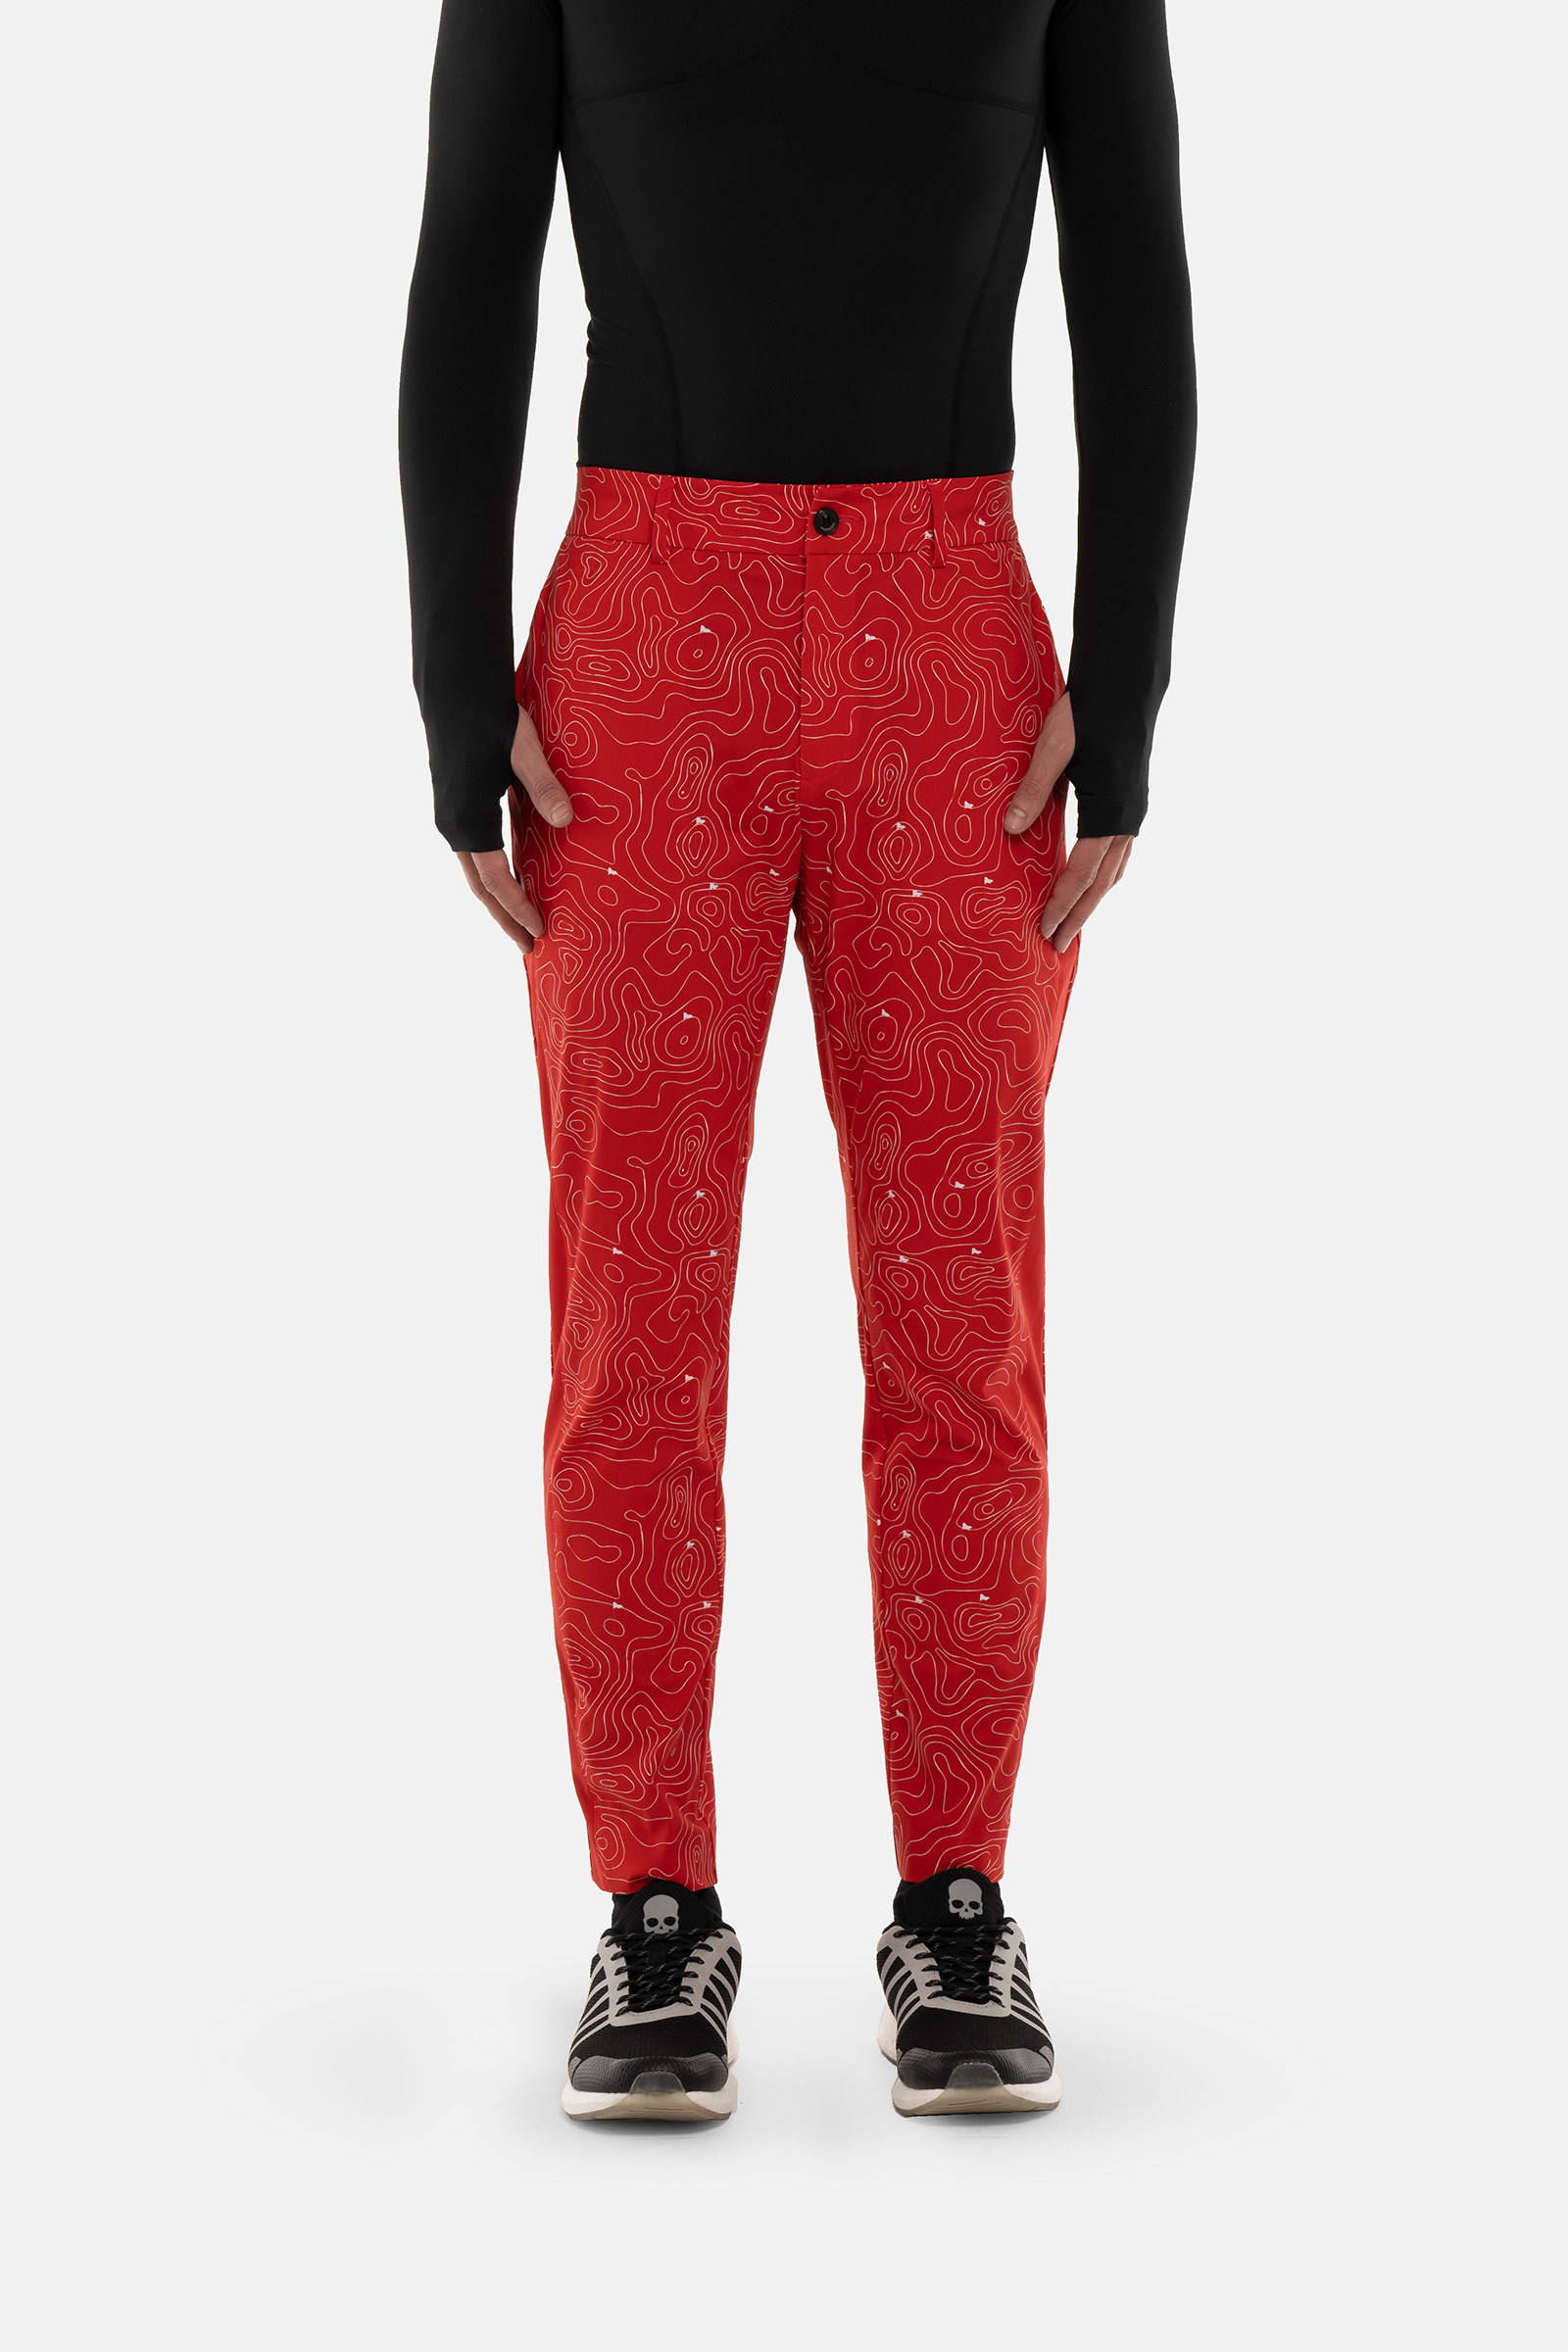 GOLF FIELDS TECH PANTS - RED - Hydrogen - Luxury Sportwear